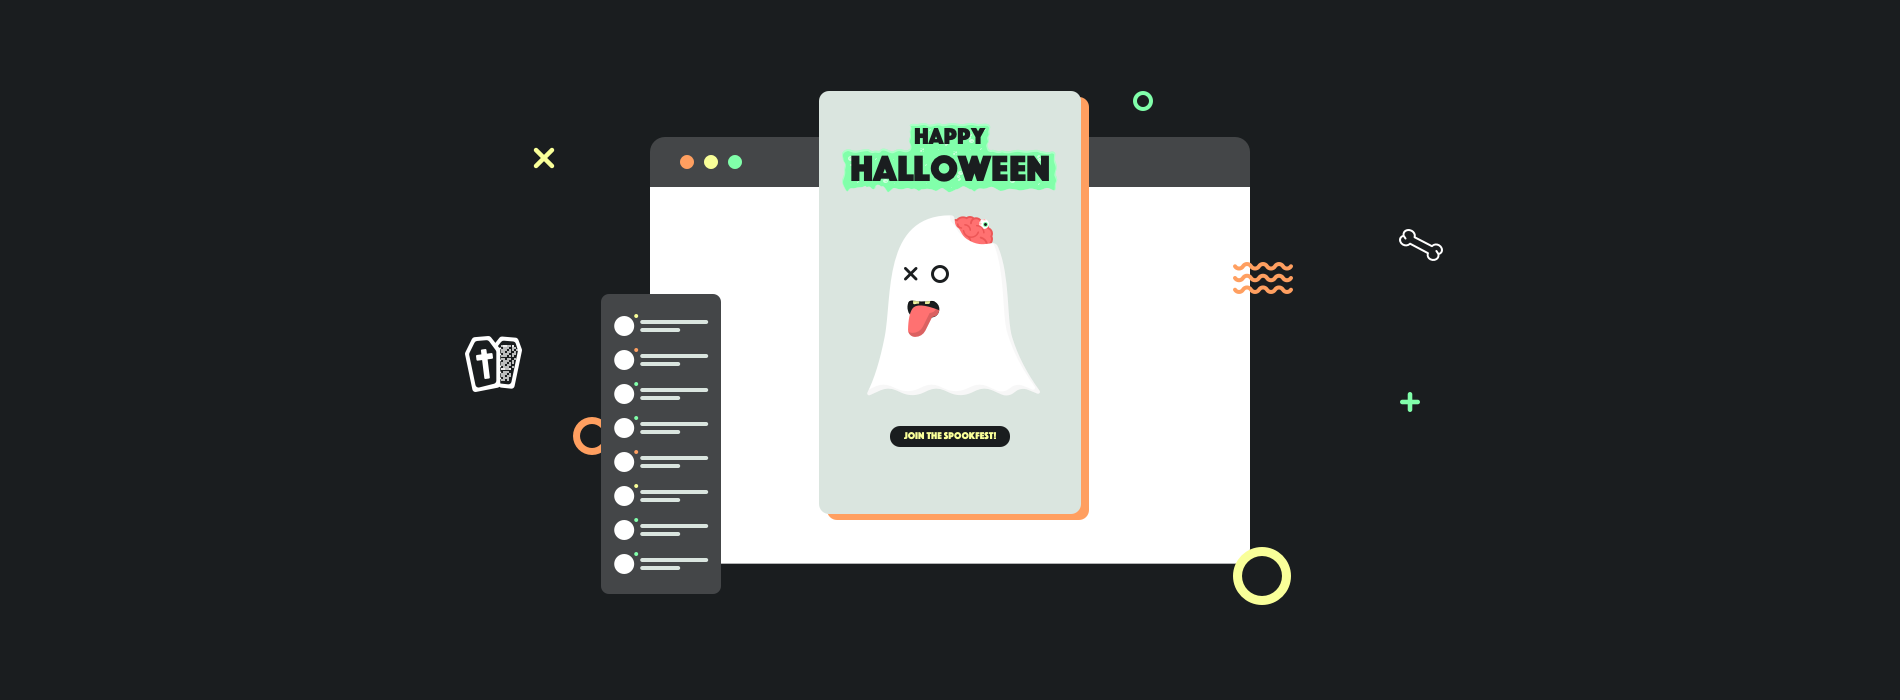 Emails d’Halloween : les bonnes pratiques à suivre et les faux pas à éviter !